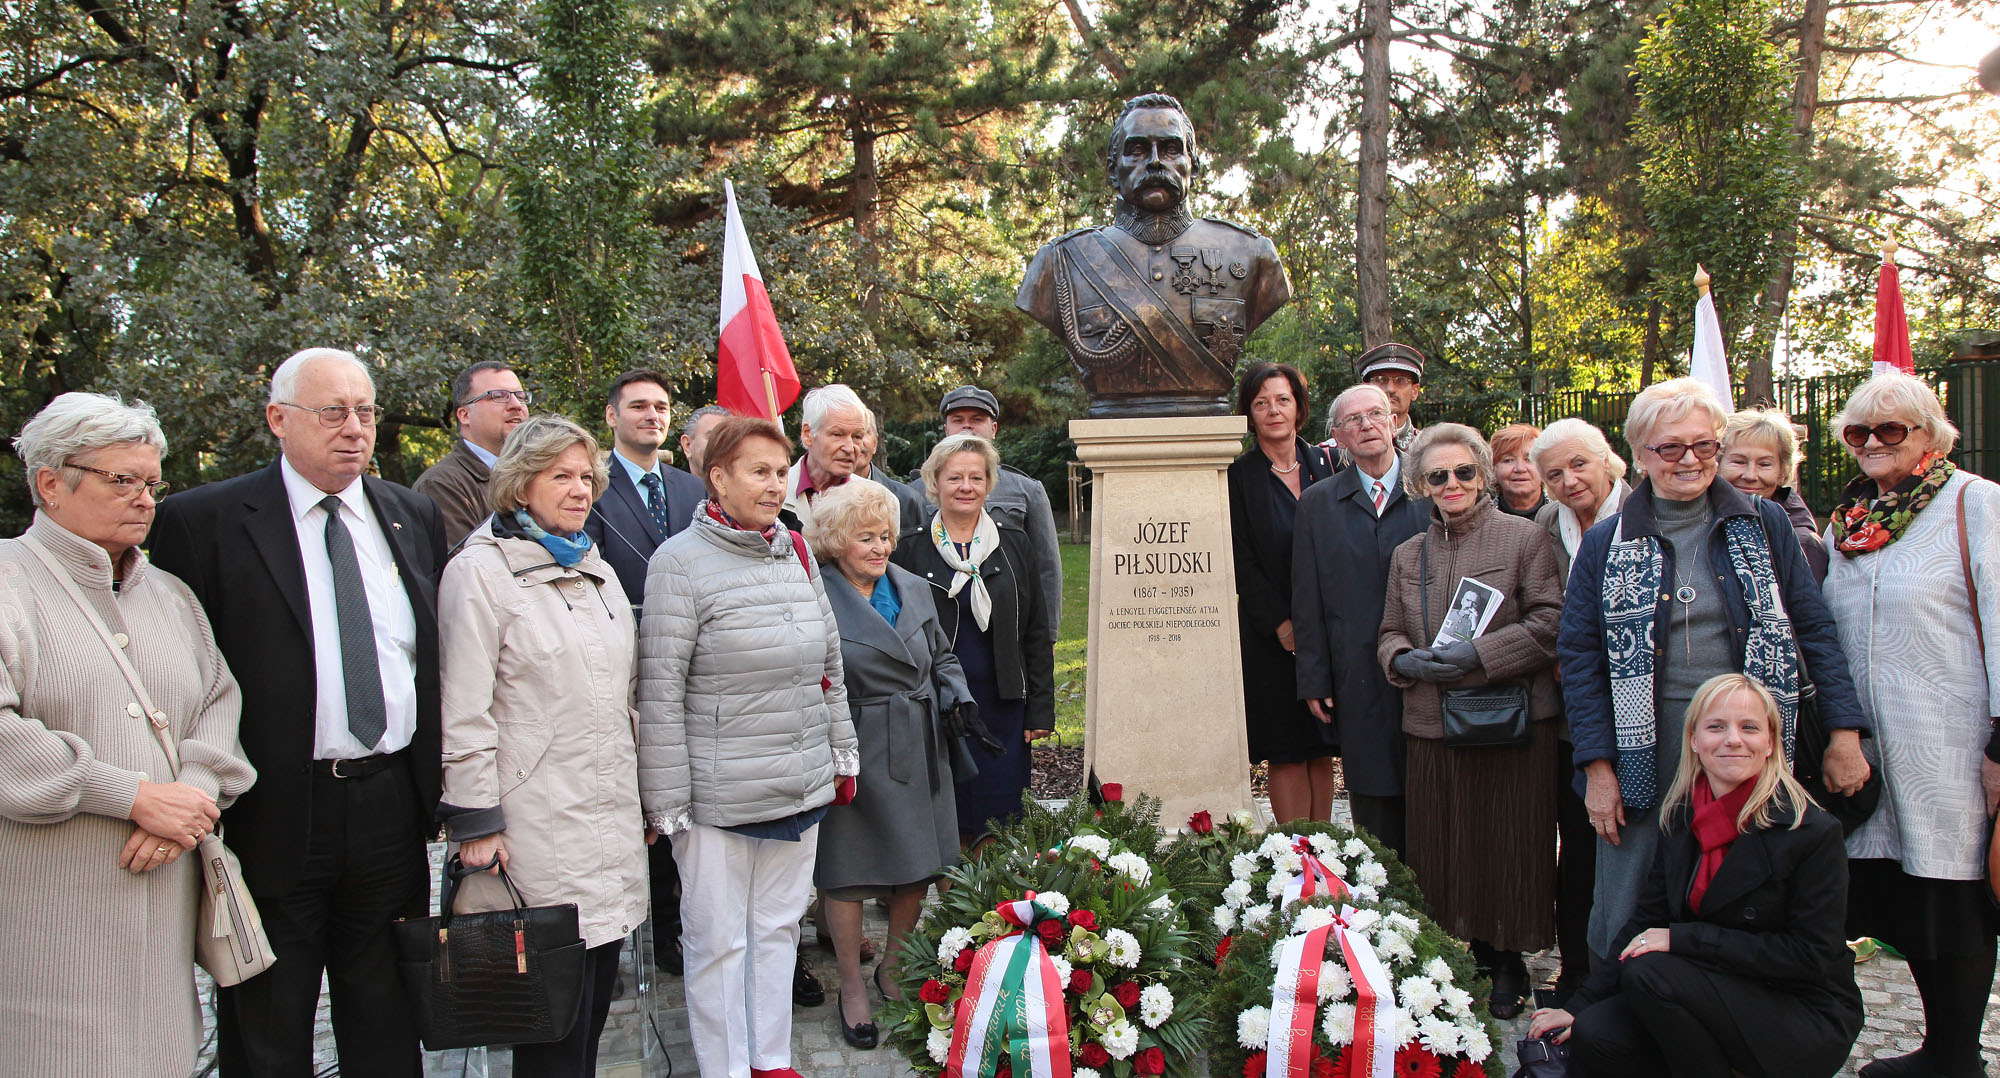 Piłsudski marsallnak, a lengyel állam újjáteremtőjének, a függetlenségi harc legendás vezetőjének állítottak szobrot a felújított Csörsz parkban.